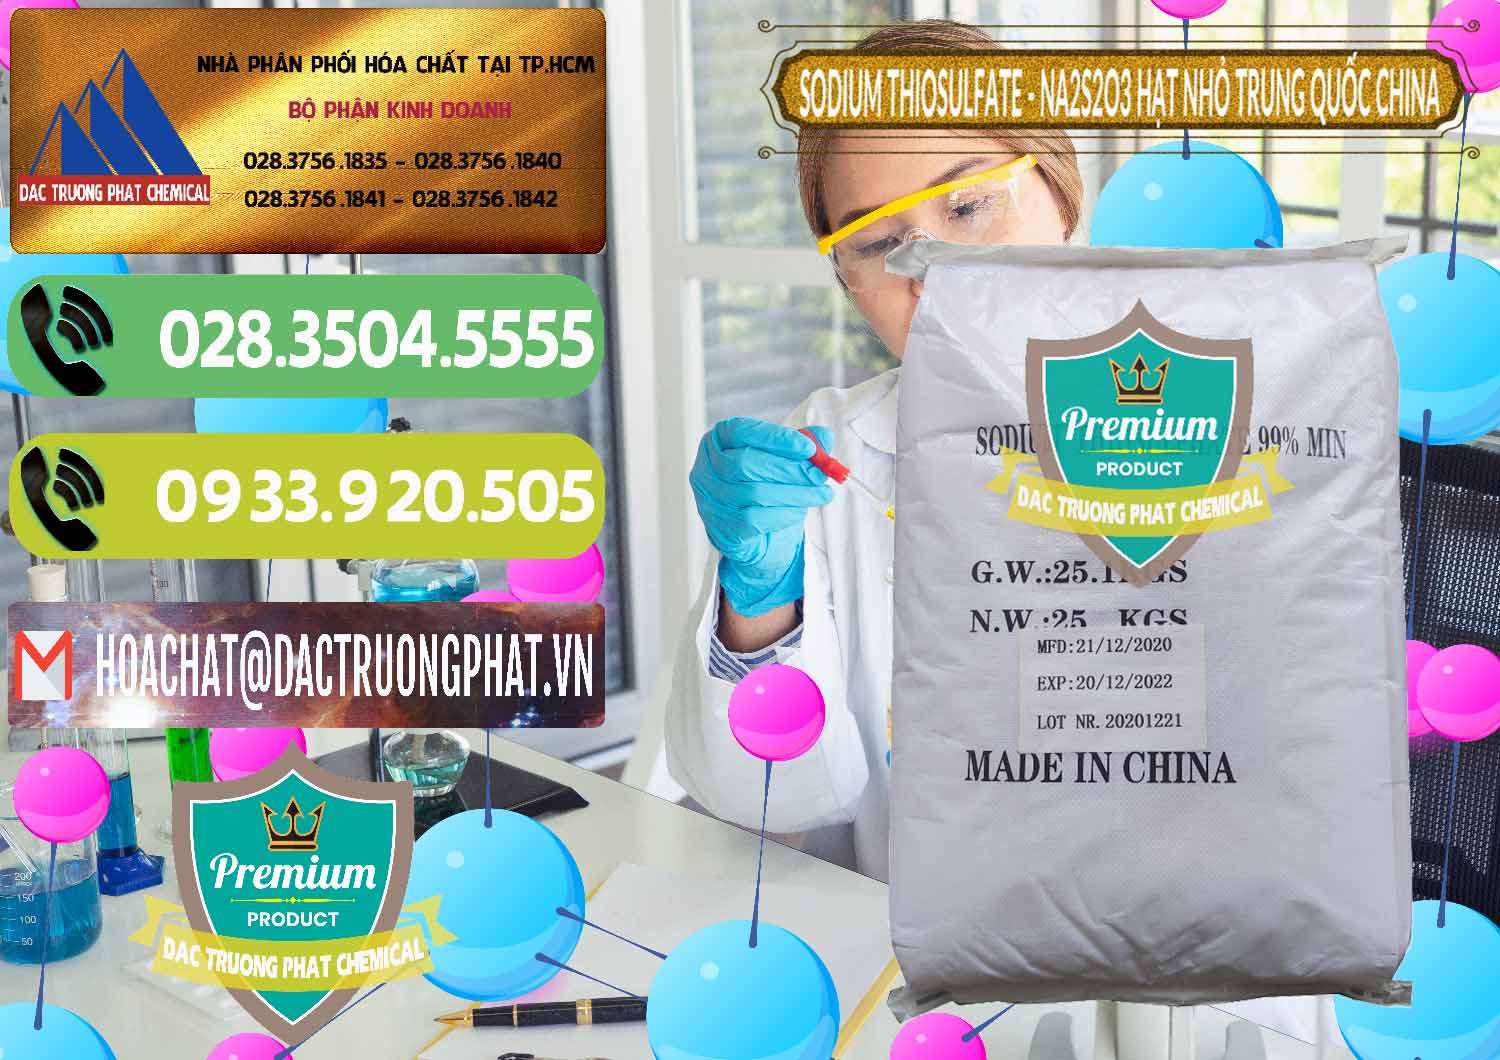 Công ty chuyên nhập khẩu và bán Sodium Thiosulfate - NA2S2O3 Hạt Nhỏ Trung Quốc China - 0204 - Công ty nhập khẩu ( phân phối ) hóa chất tại TP.HCM - hoachatmientay.vn